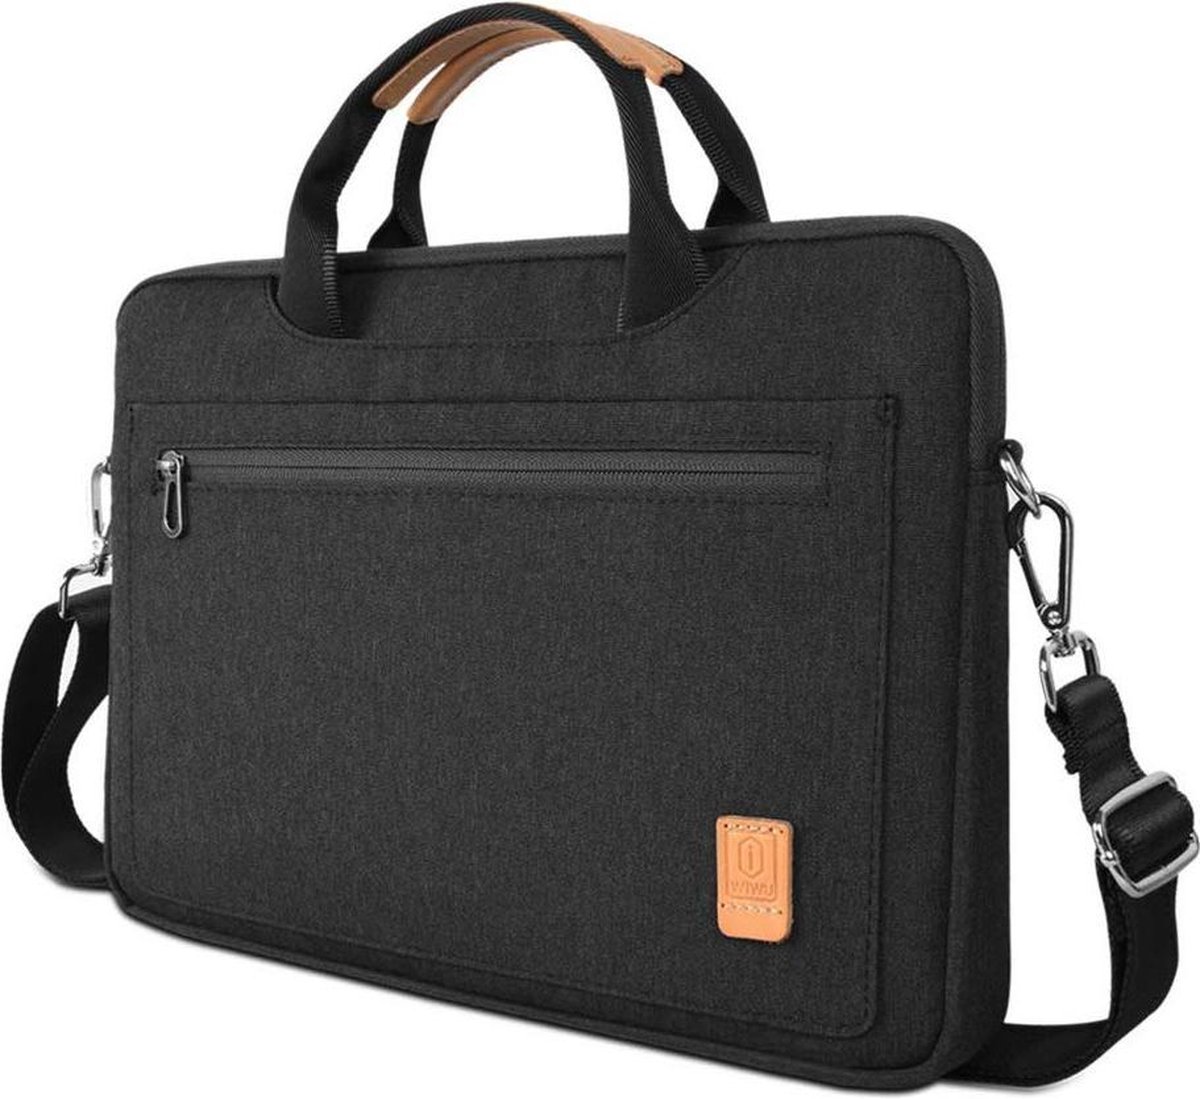 Laptoptas geschikt voor Acer Travelmate - 14 inch Pioneer Waterafstotende laptoptas met schouderband - Zwart